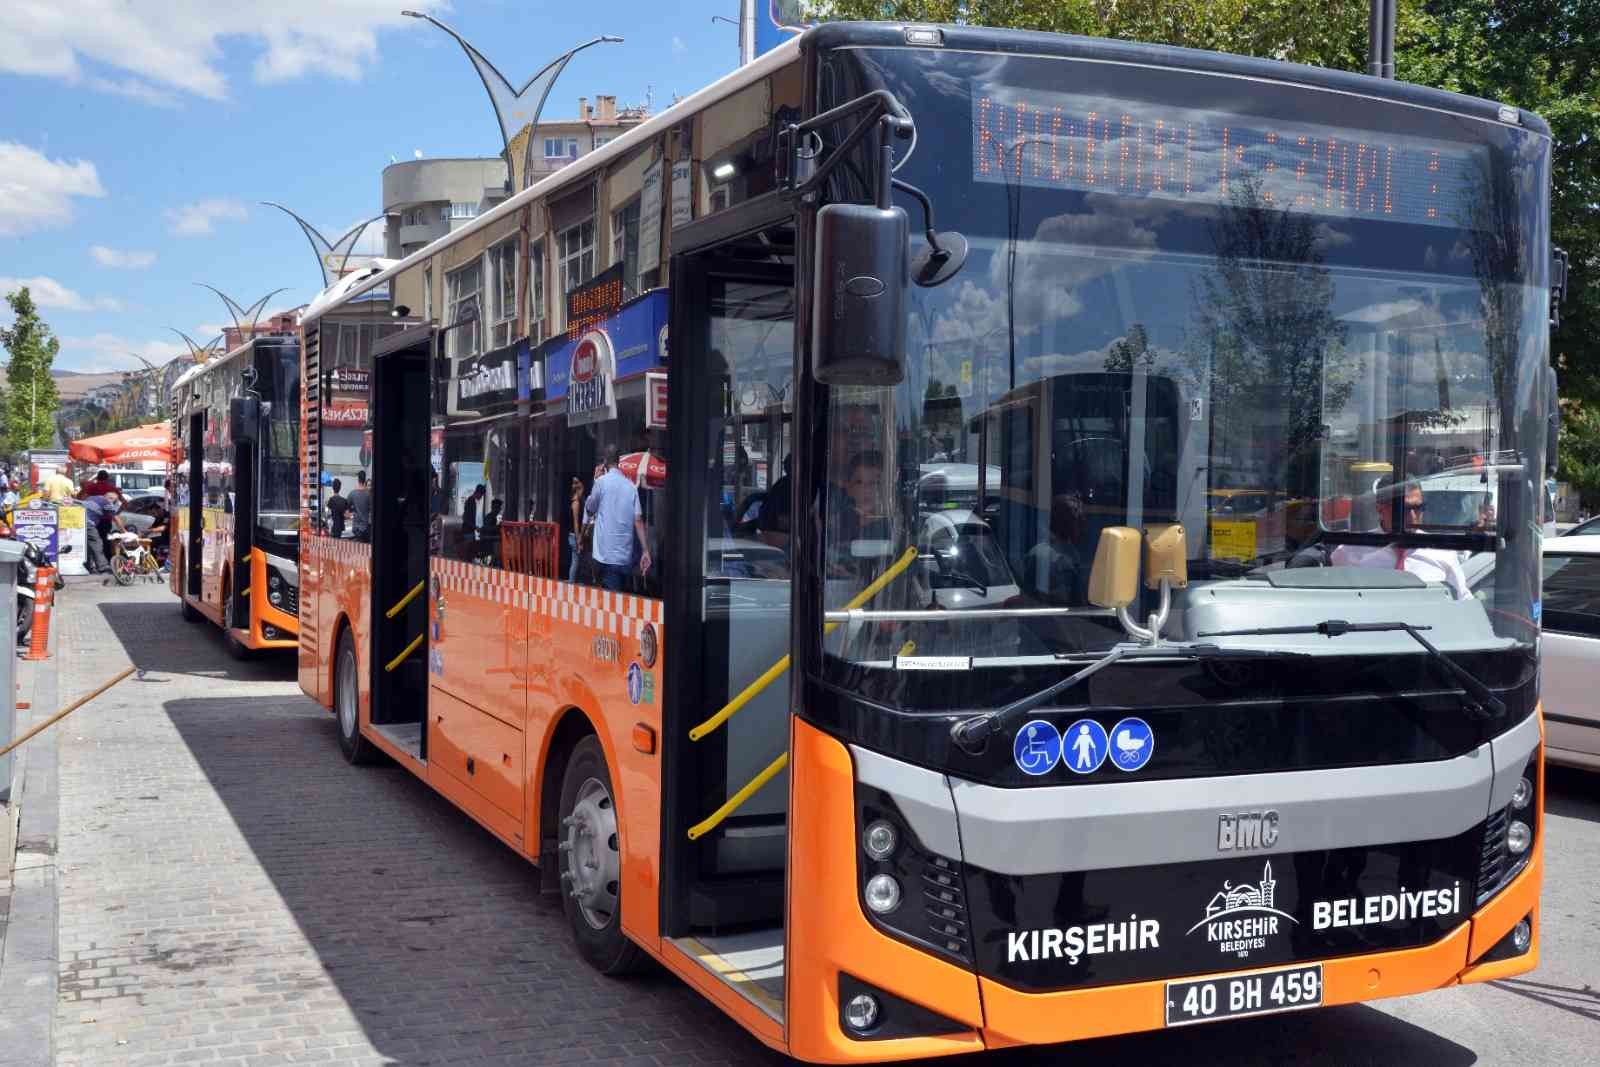 Belediye Başkanı Ekicioğlu: “Toplu Taşımada 28 otobüs 12 hatta çalışıyor” #kirsehir